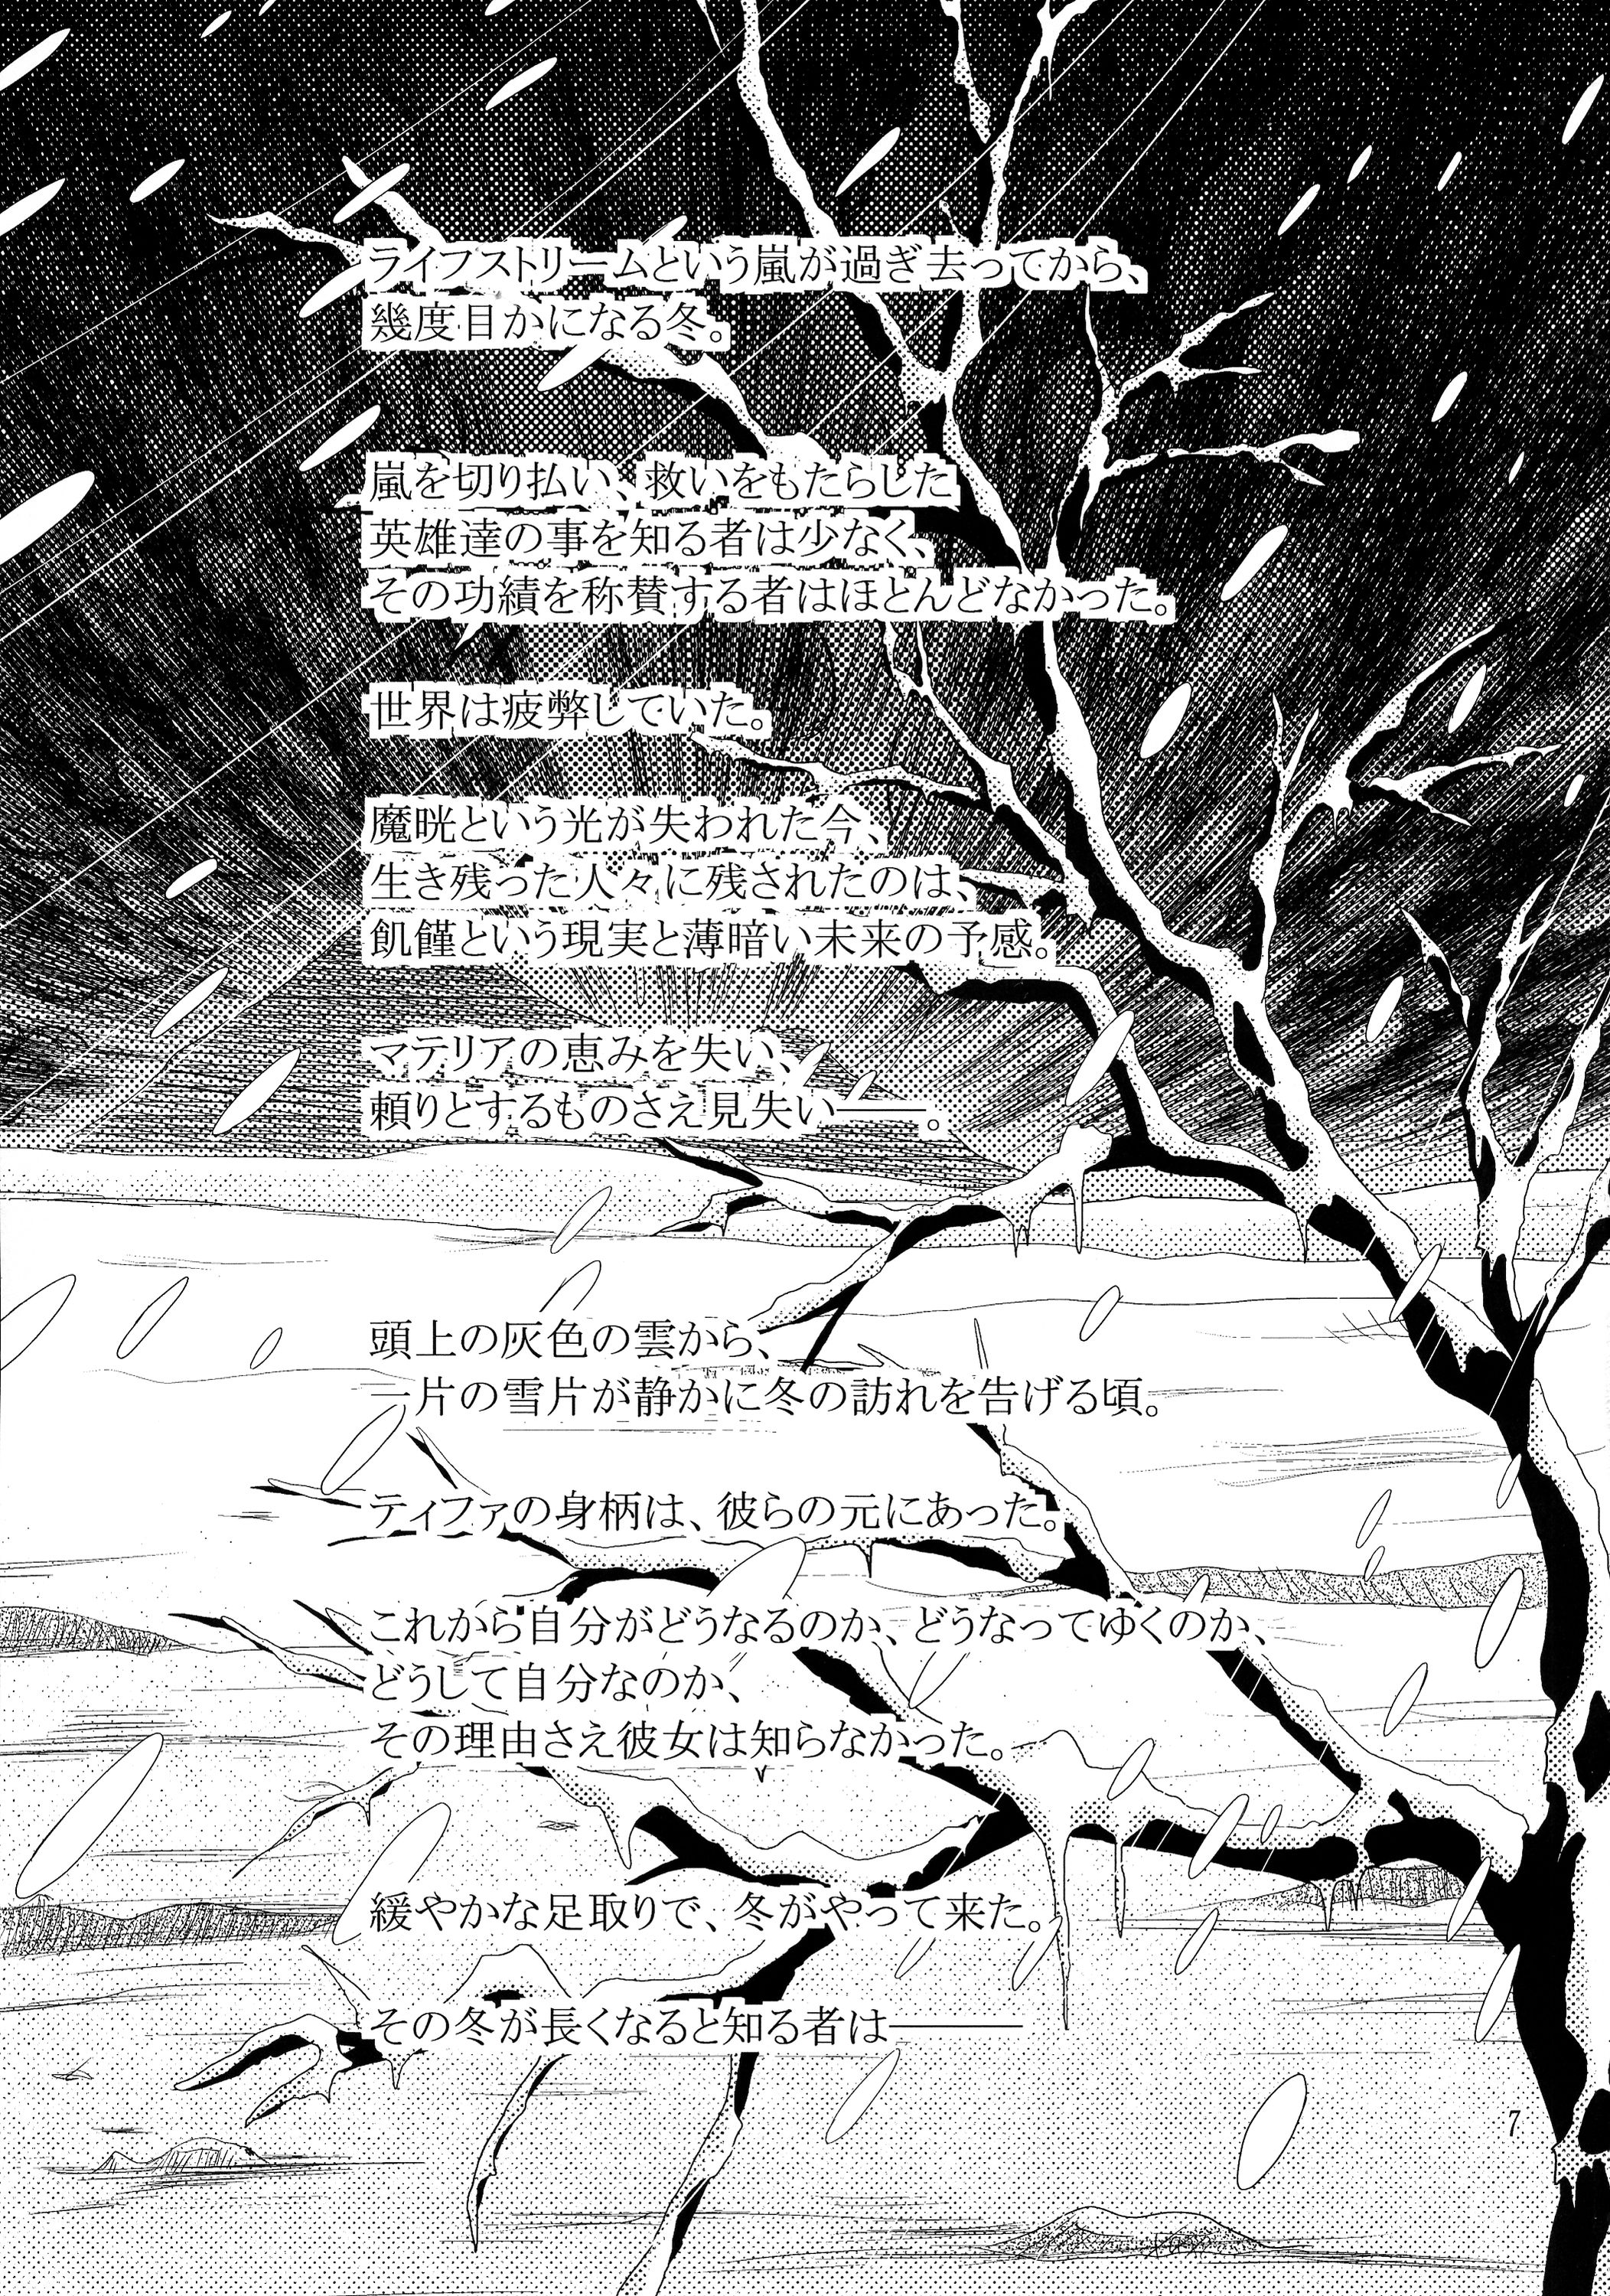 [へっぽこ堂 (電SUKE、お昼)] MATERIAL HANDLING Vol.1 (ファイナルファンタジーVII)